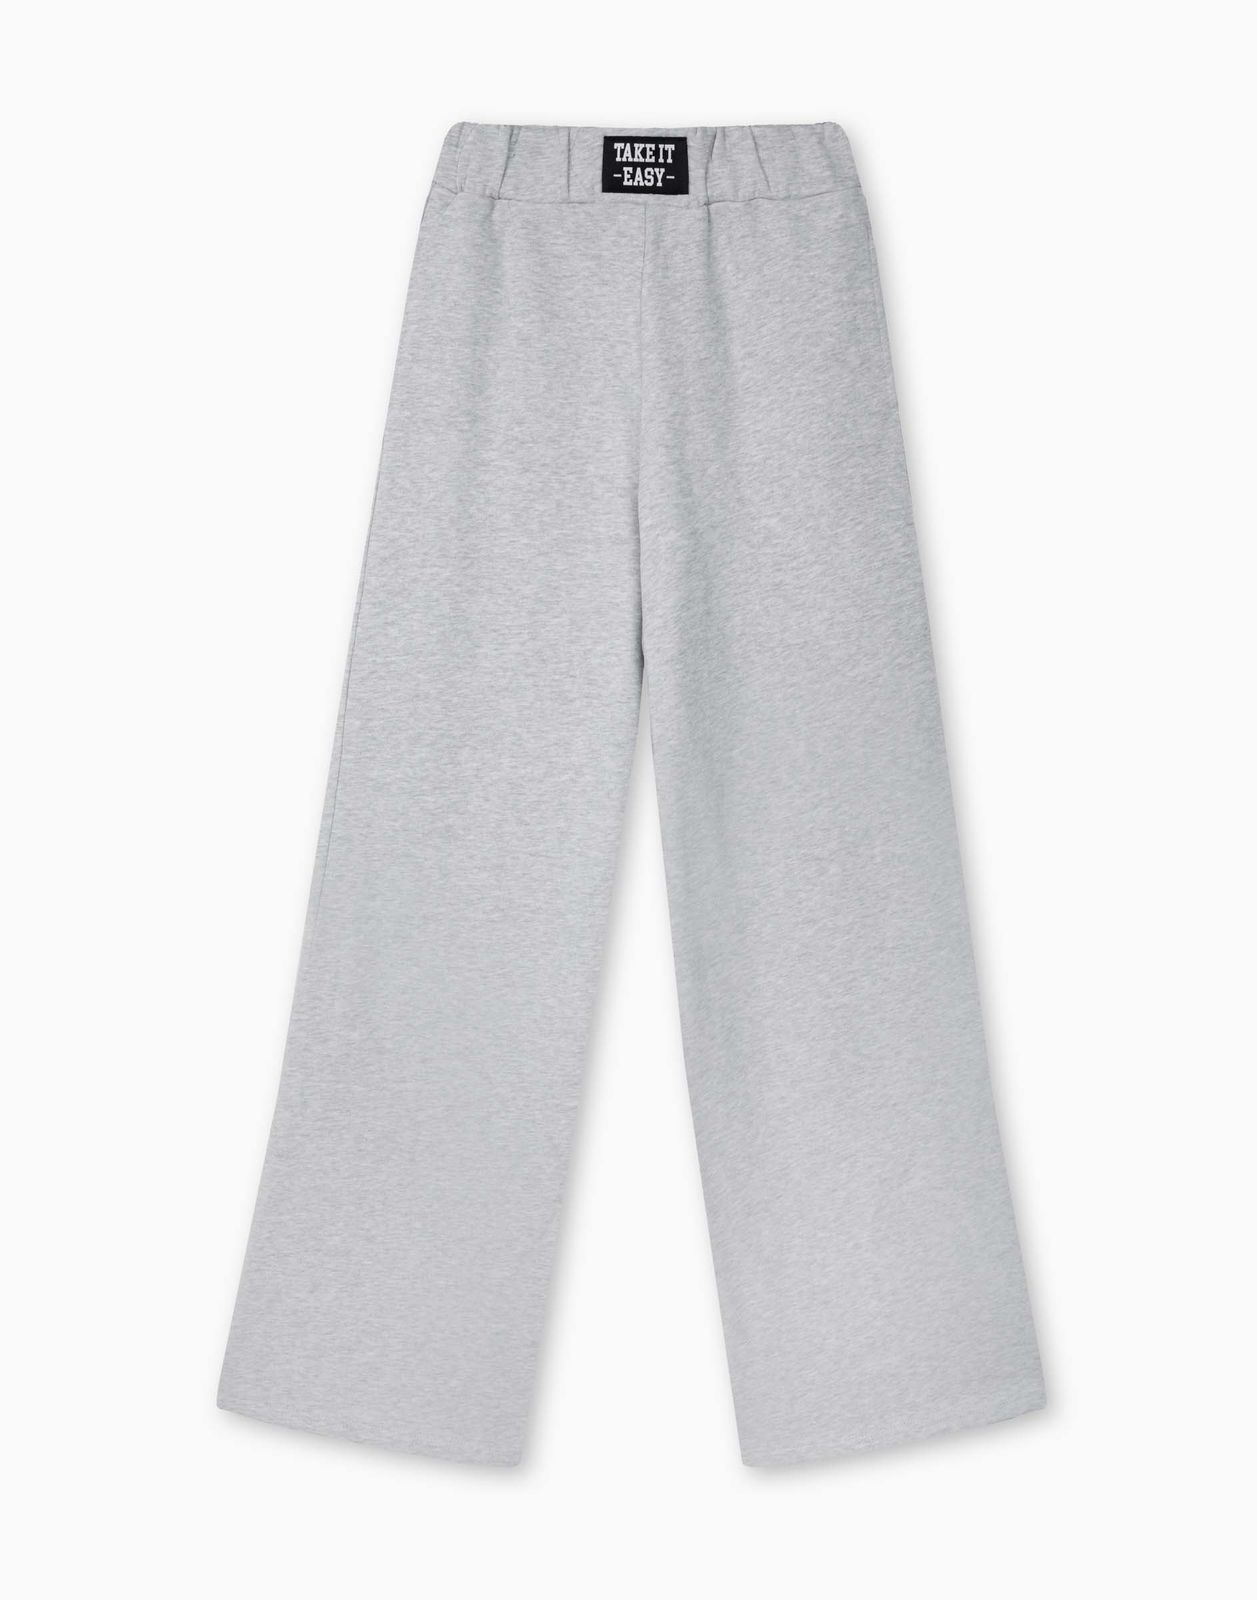 Спортивные брюки для девочки Gloria Jeans GAC022212 светло-серый меланж 7-8л/128